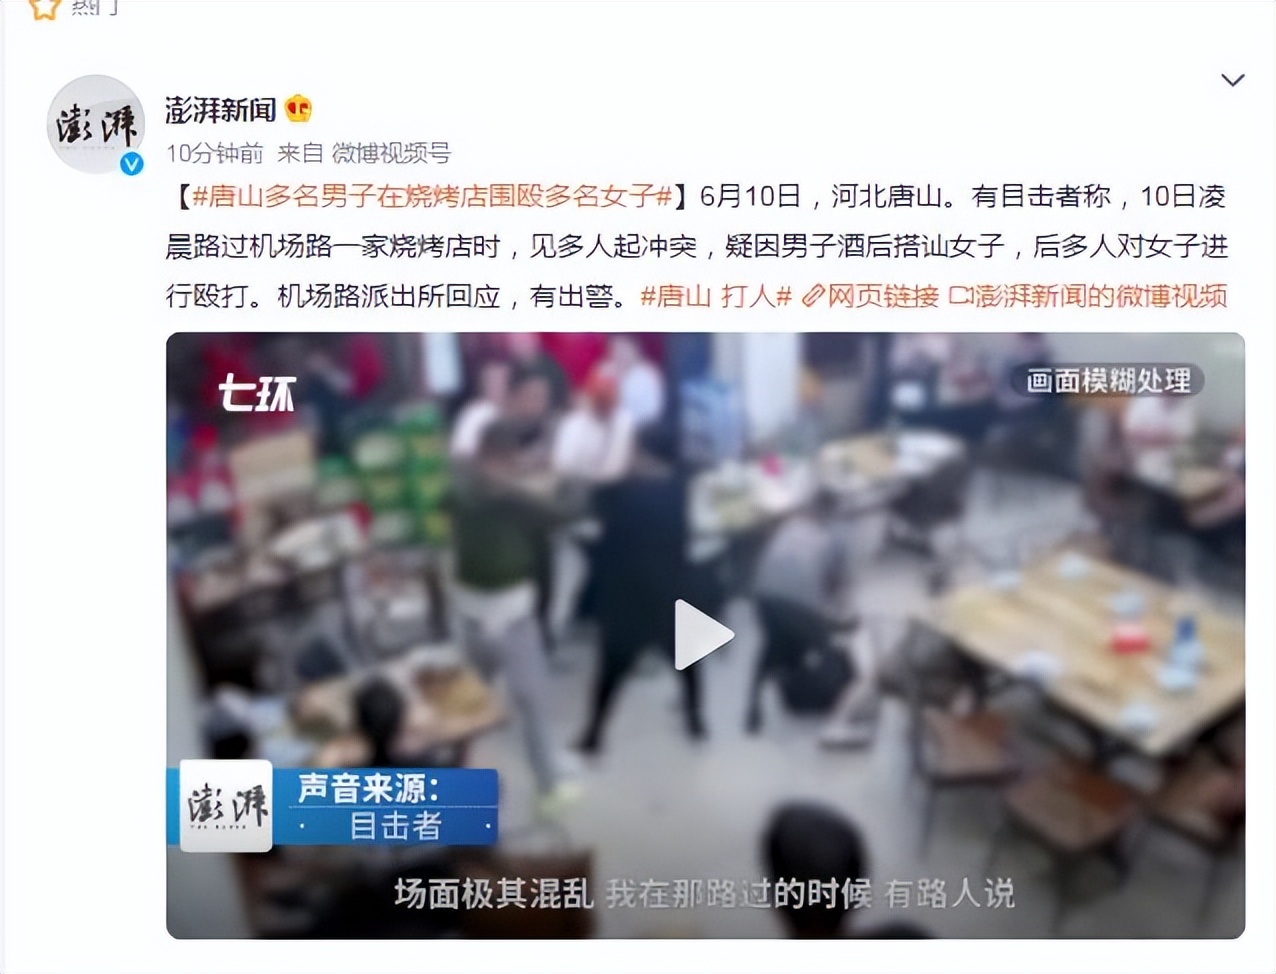 唐山机场路烧烤店打人事件现场视频 多名男子围殴多名女子